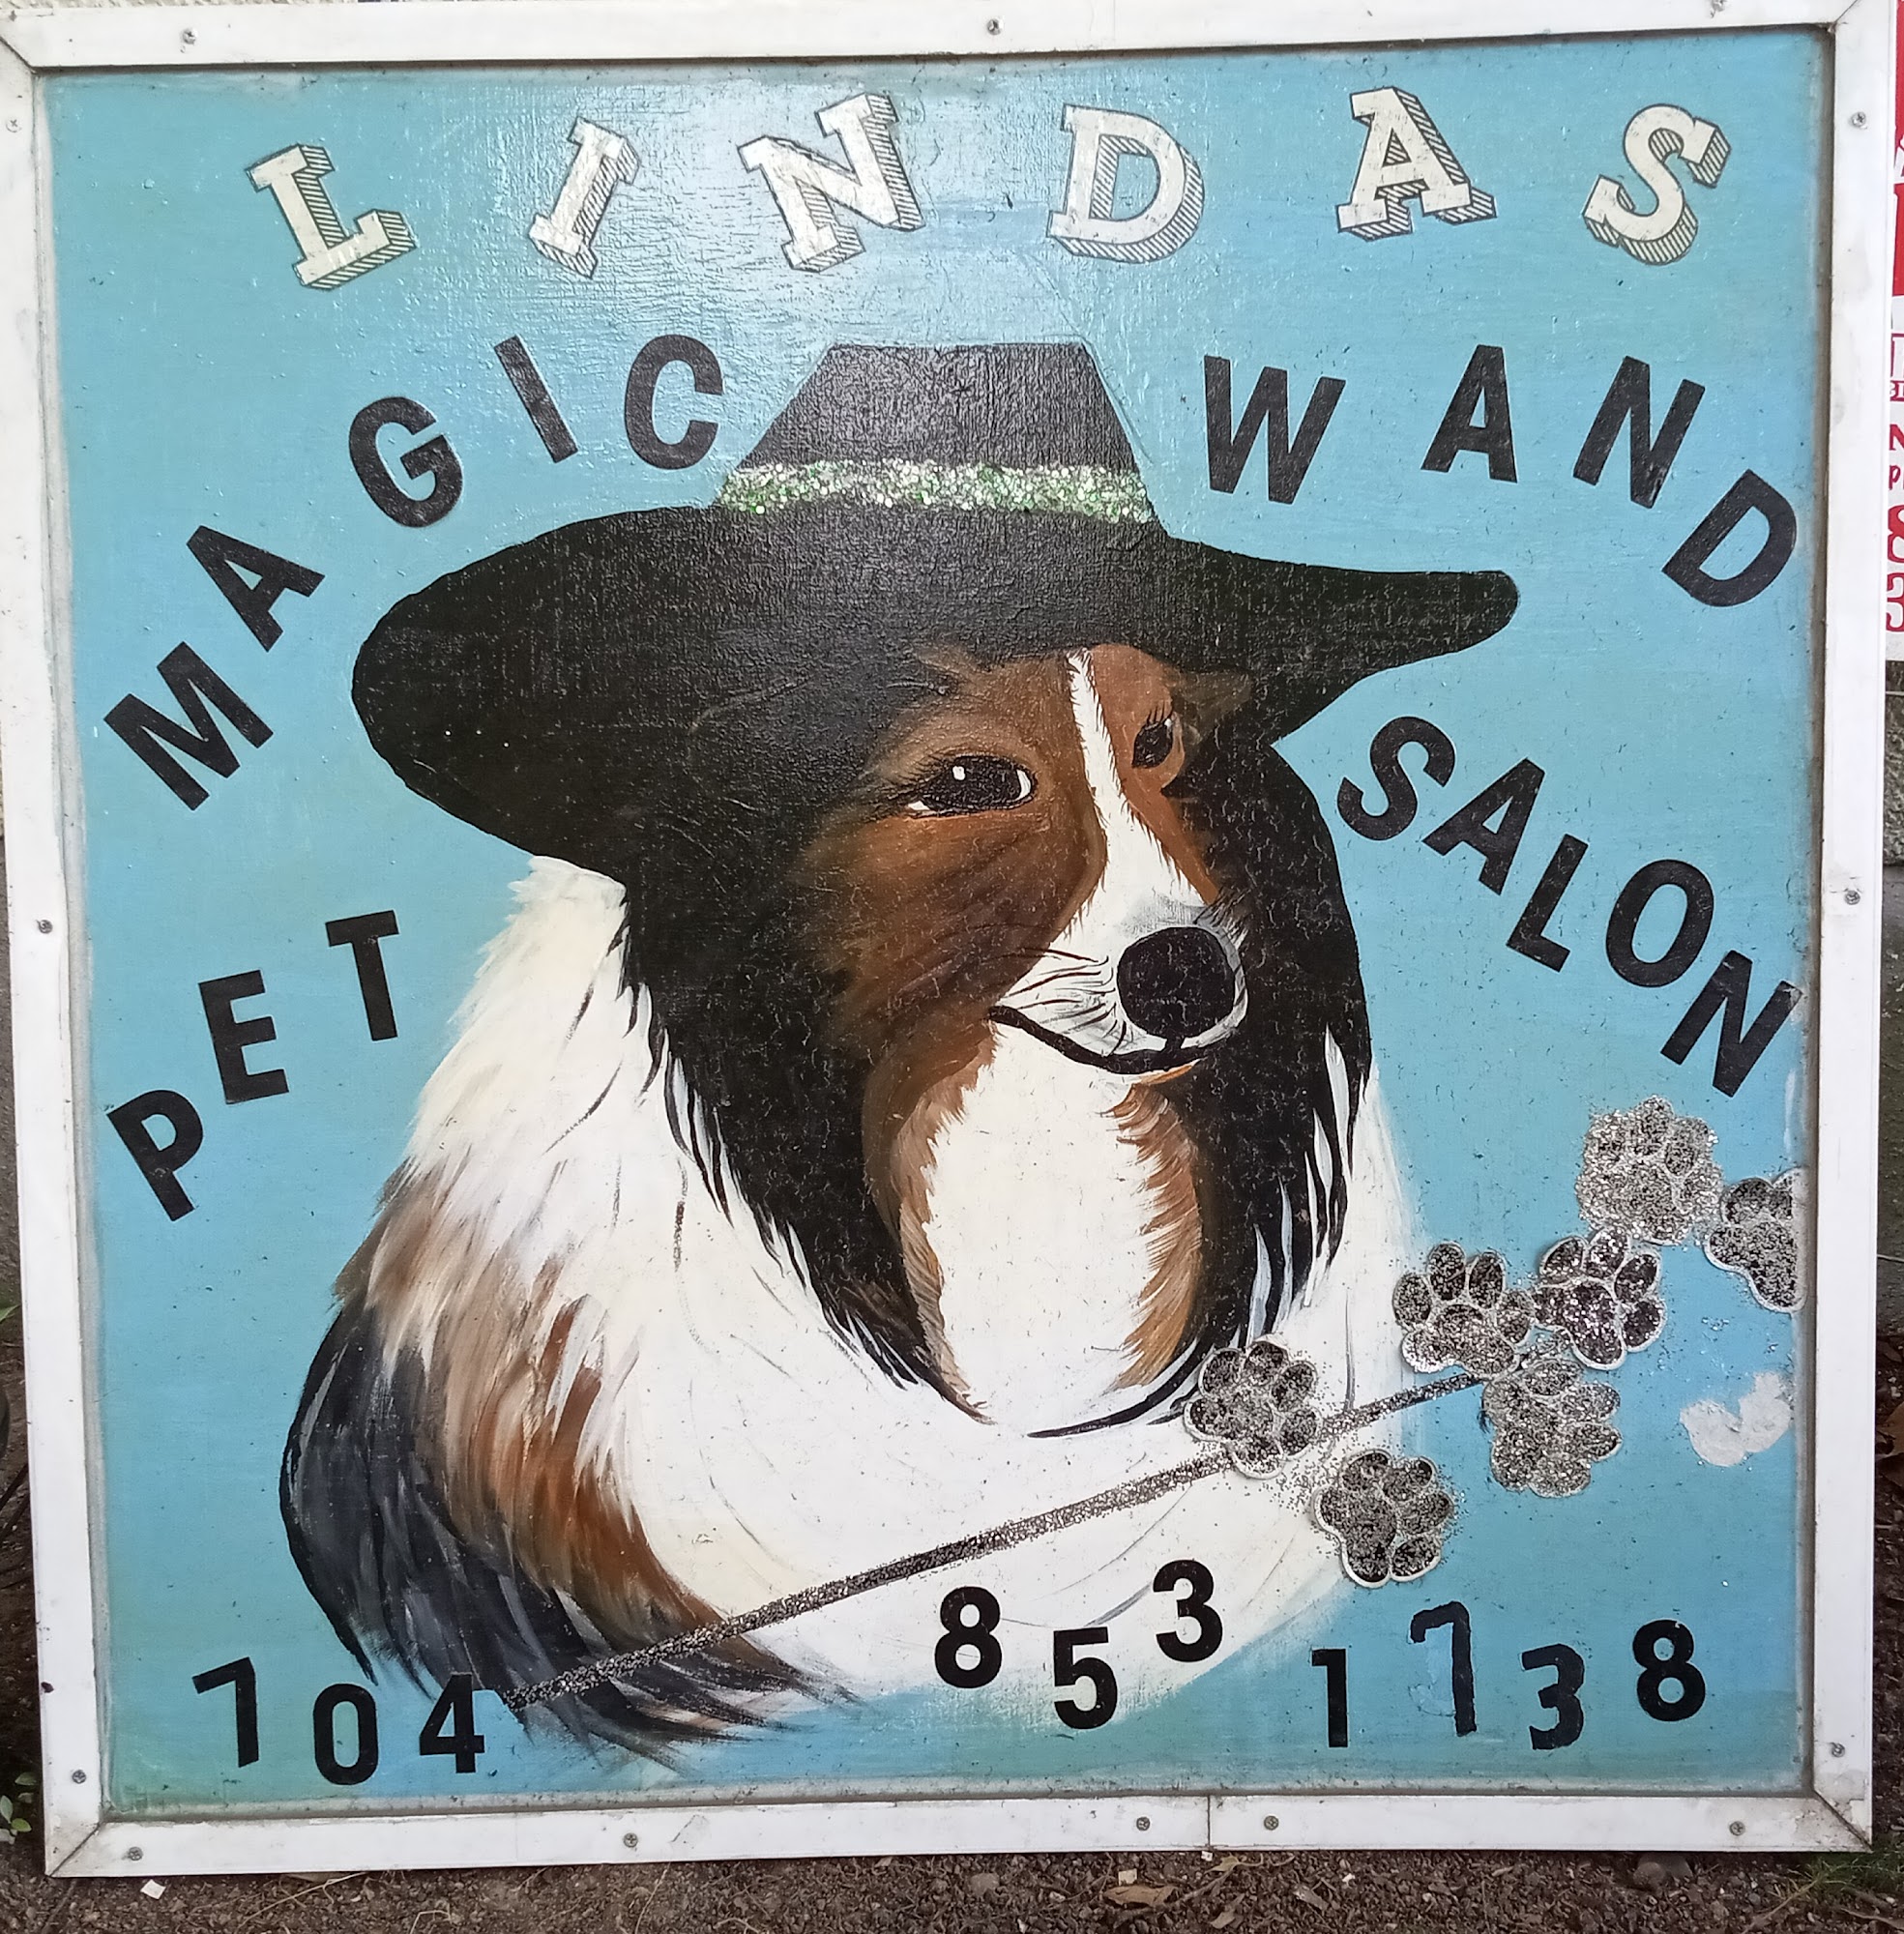 Linda’s Magic Wand Pet Salon